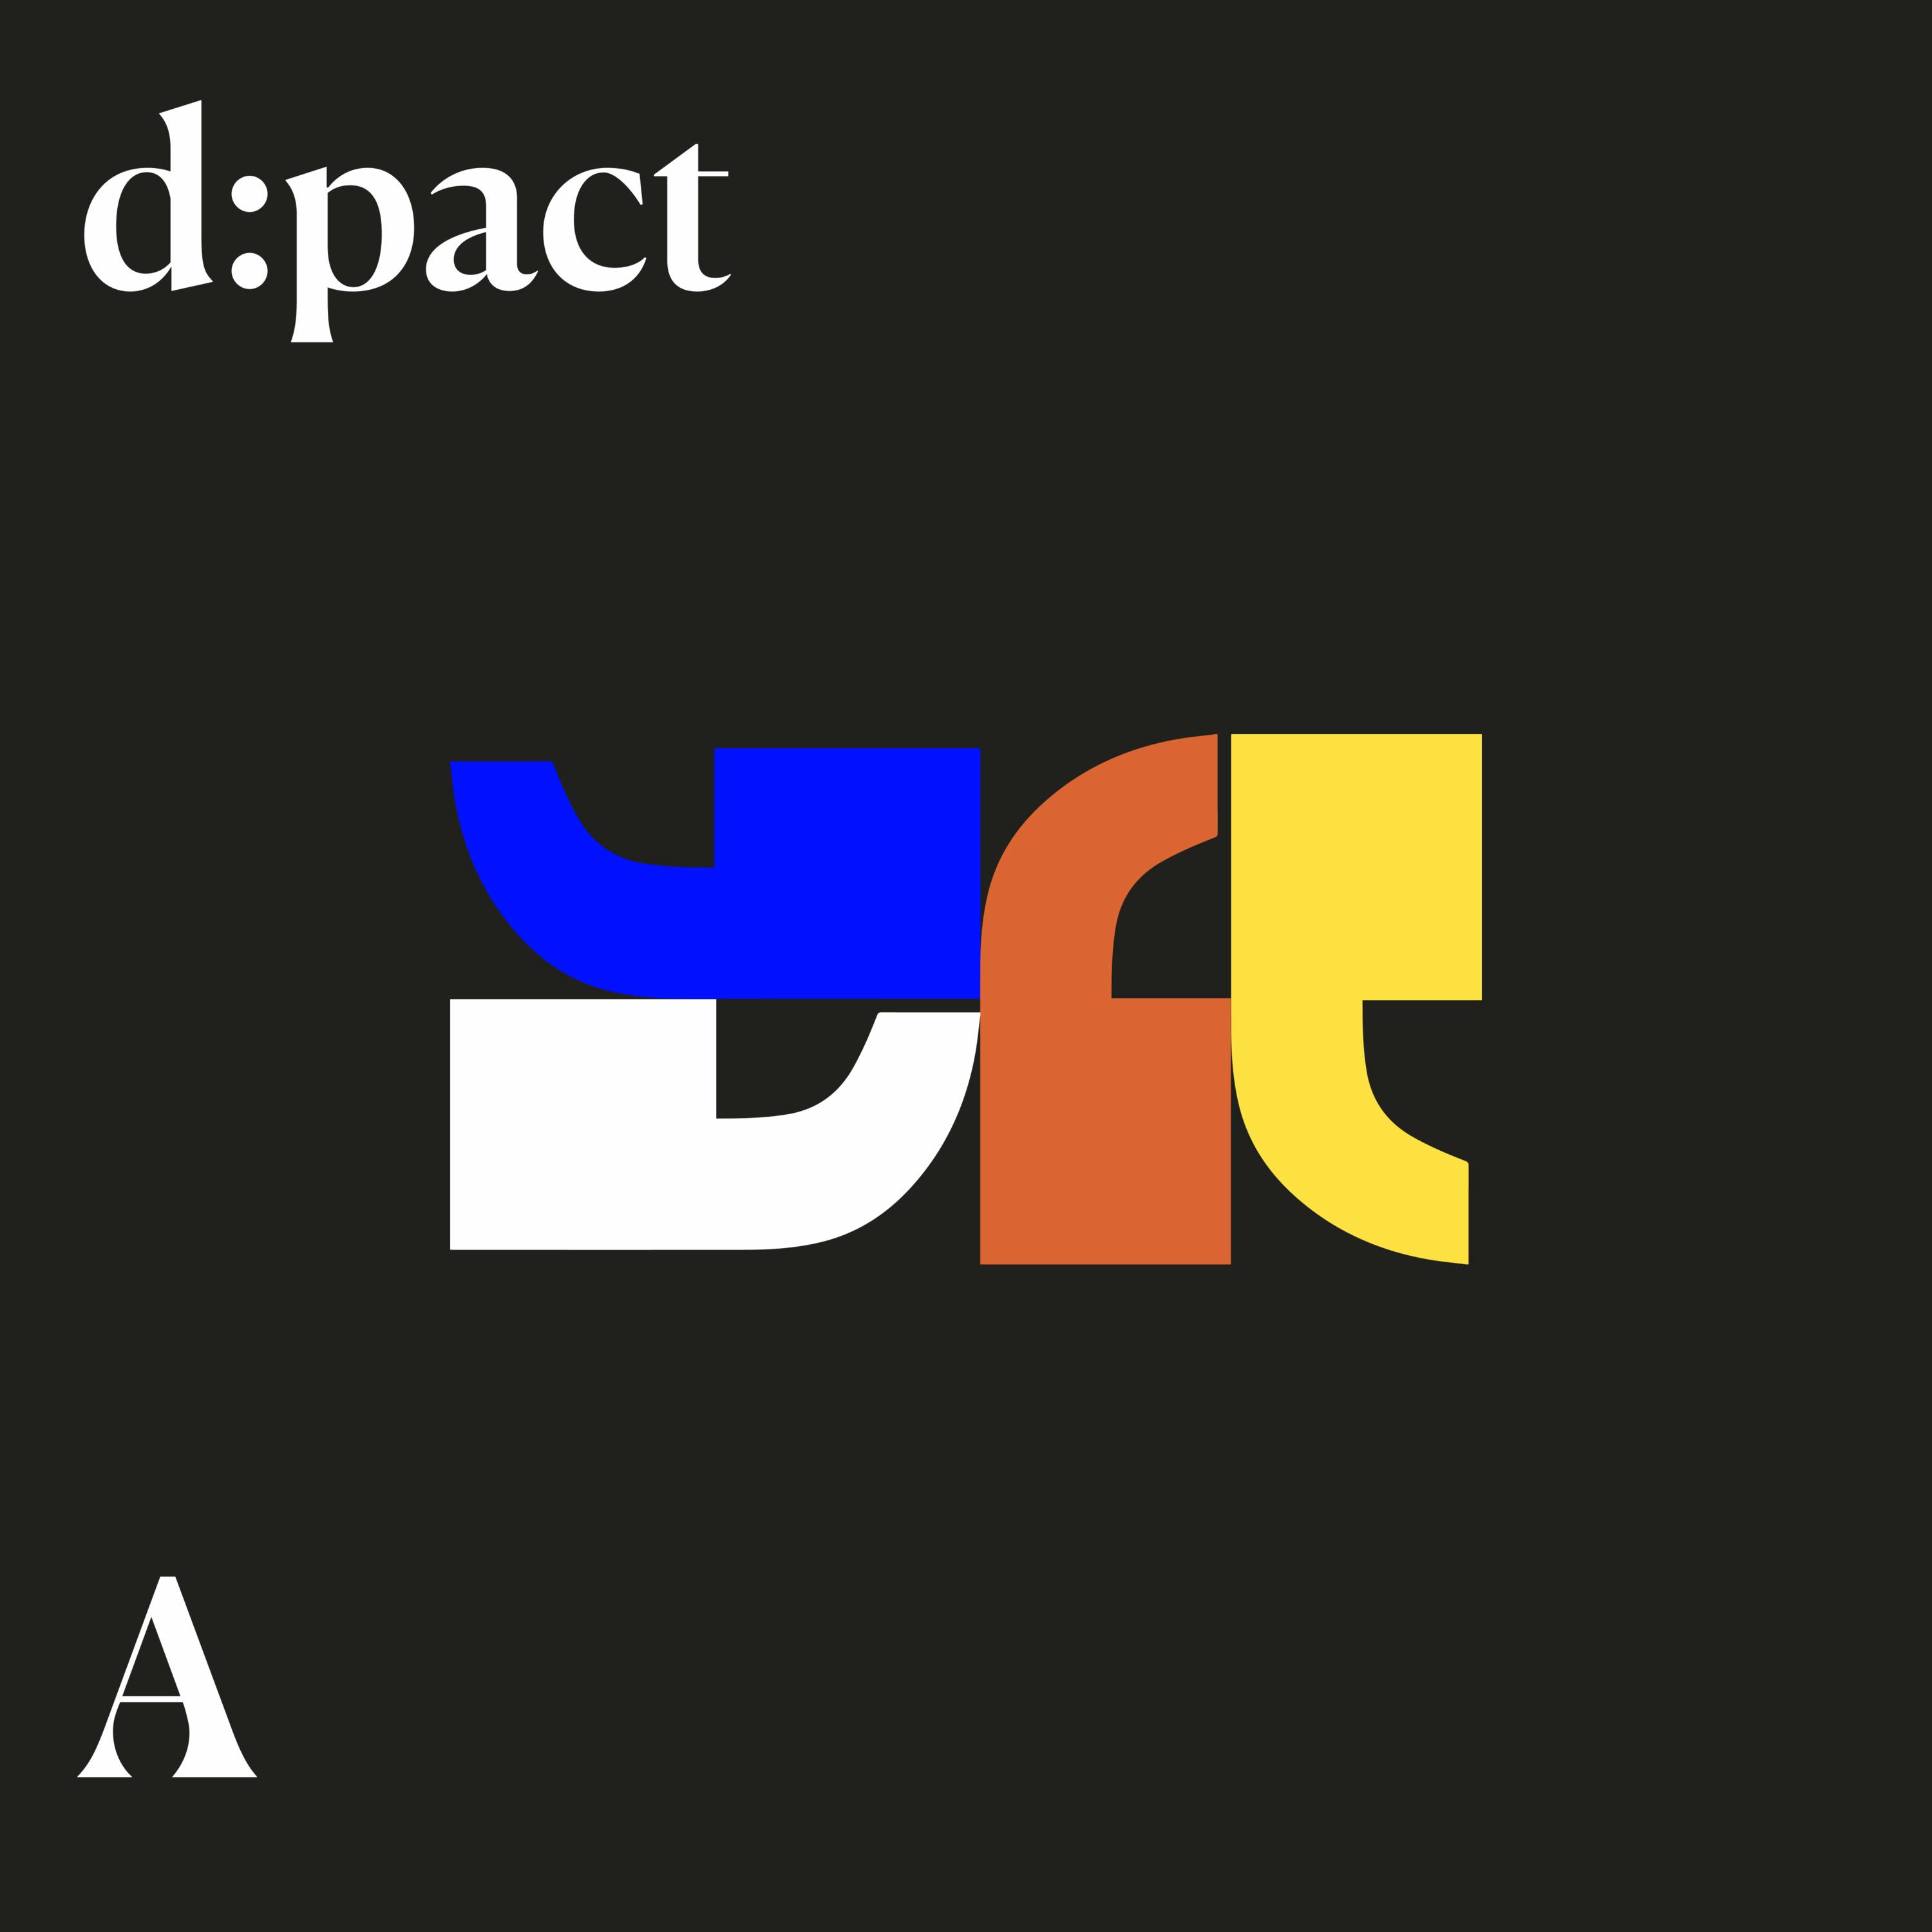 d:pact: Merkezsiz bir geleceğin peşinde